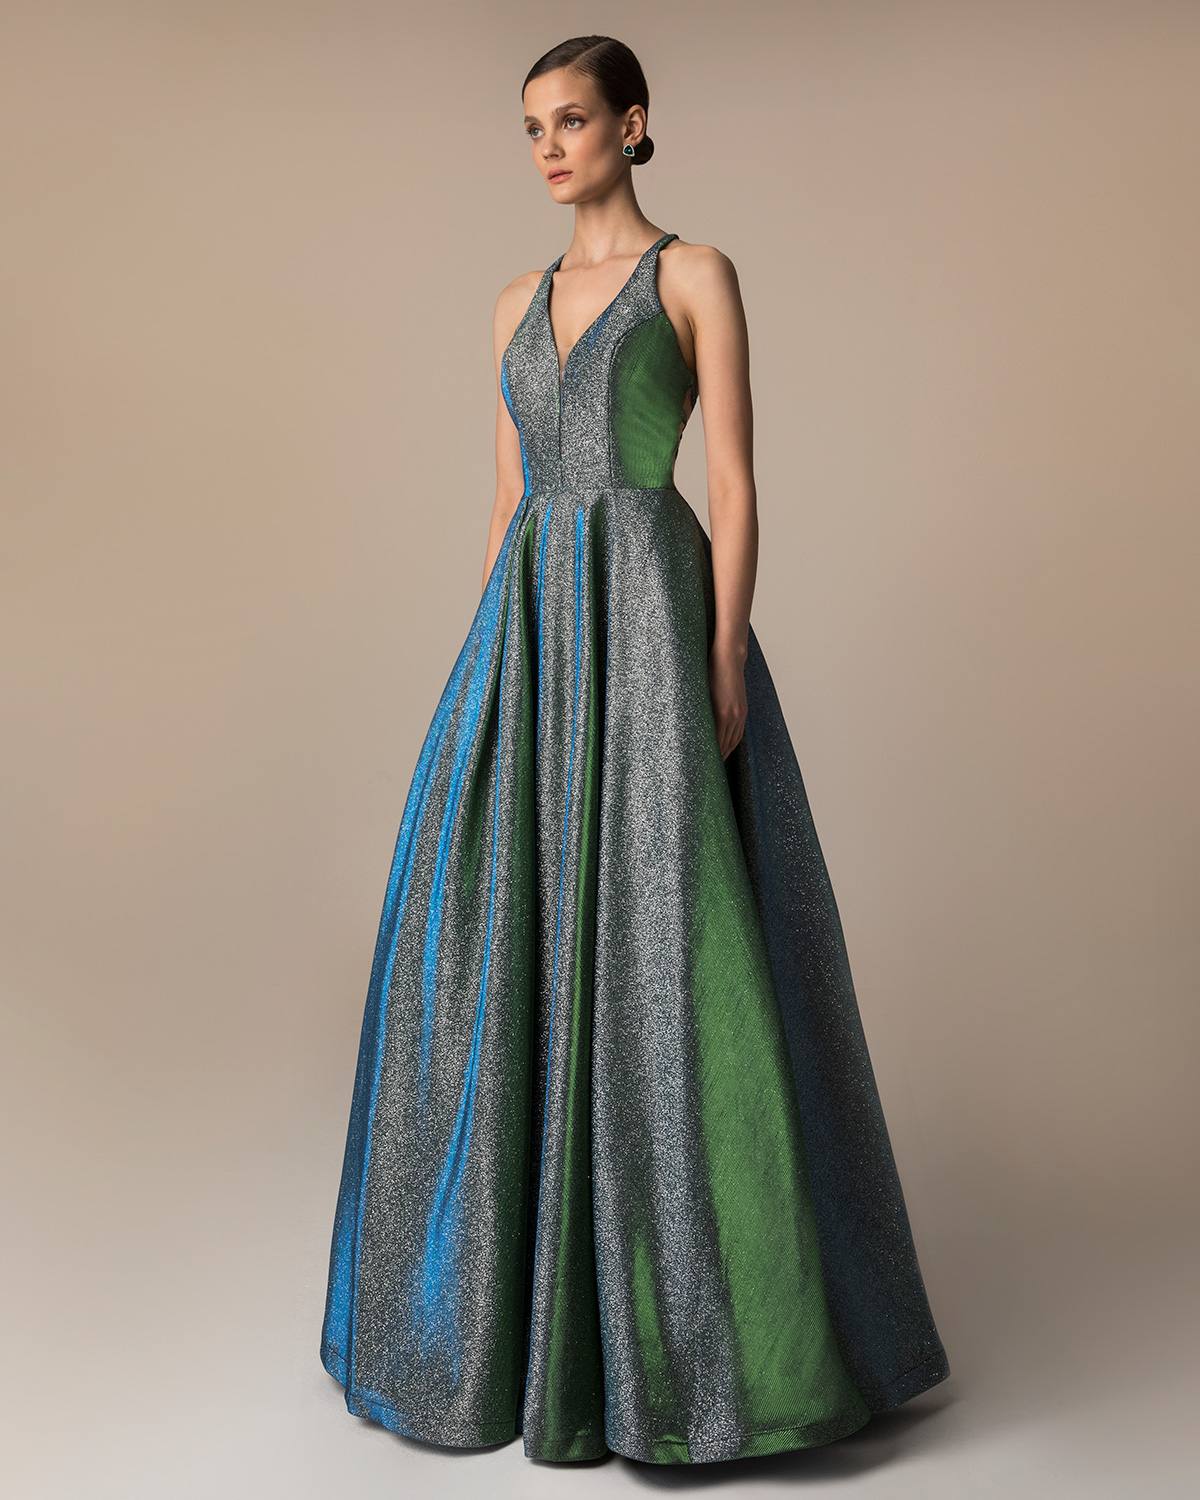 Вечерние платья / Long evening dress with shining fabric